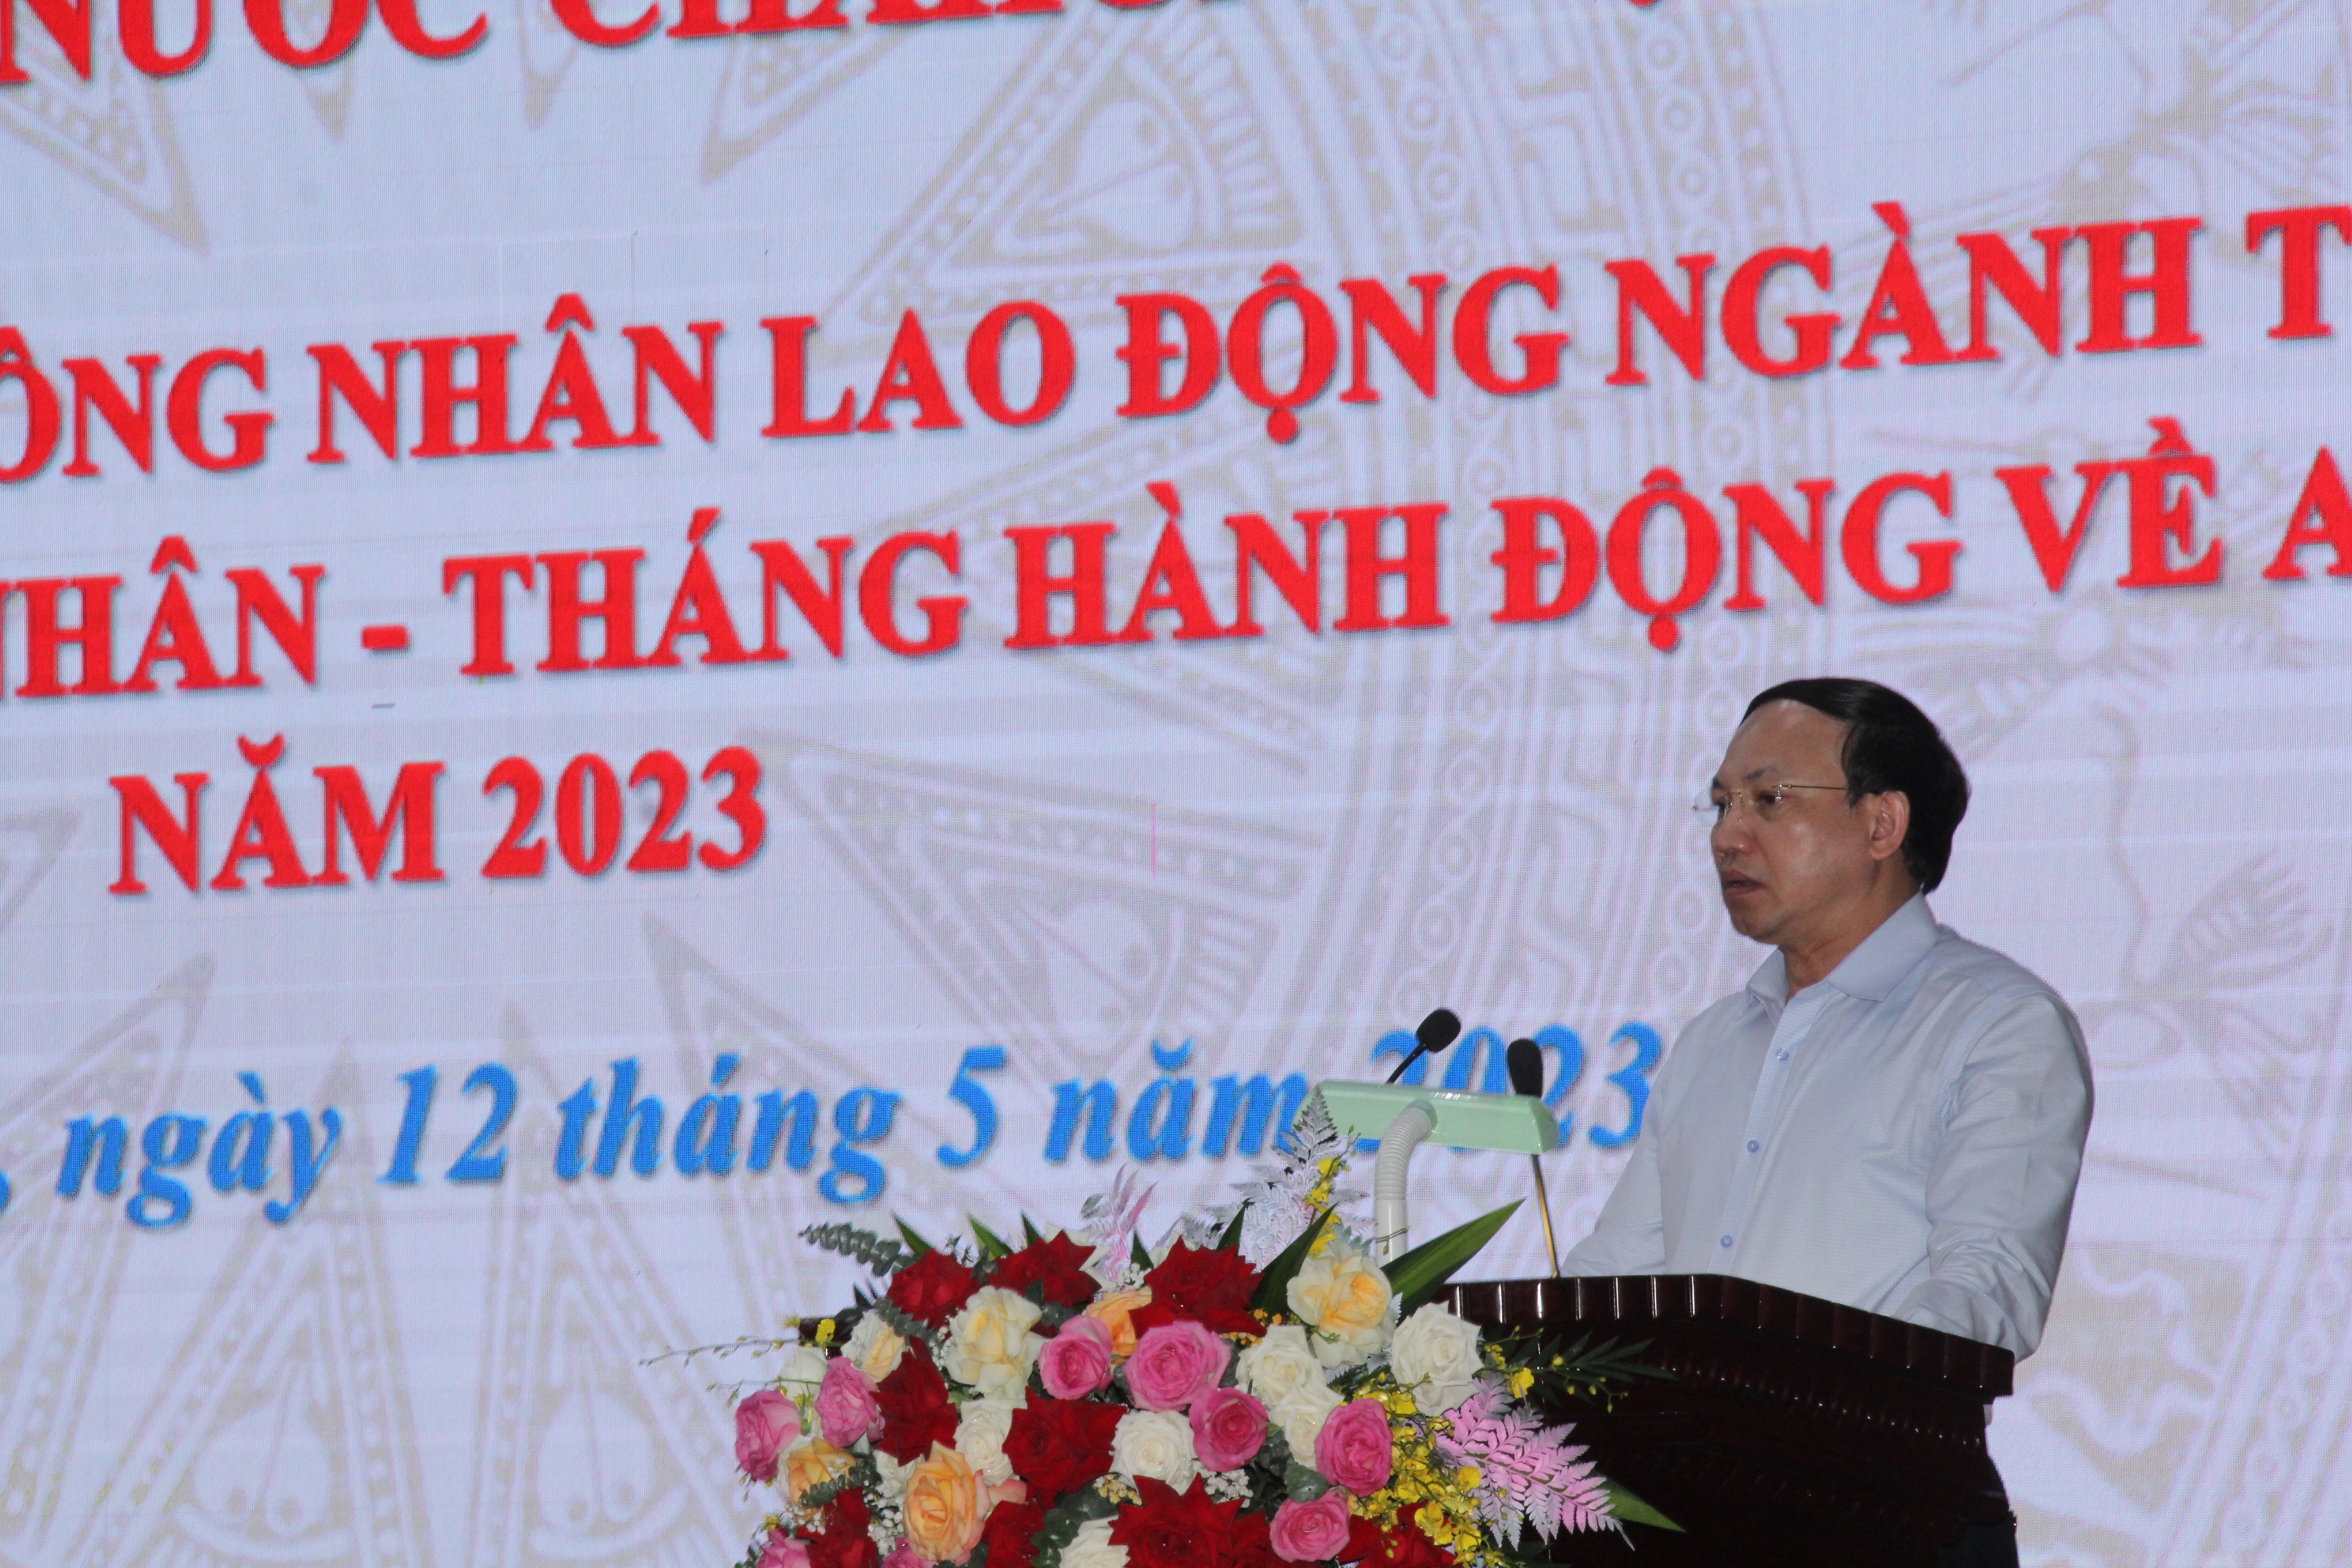 Đội ngũ công nhân lao động ngành Than có vai trò và đóng góp quan trọng đối với sự phát triển kinh tế - xã hội của tỉnh Quảng Ninh và đất nước - Ảnh 2